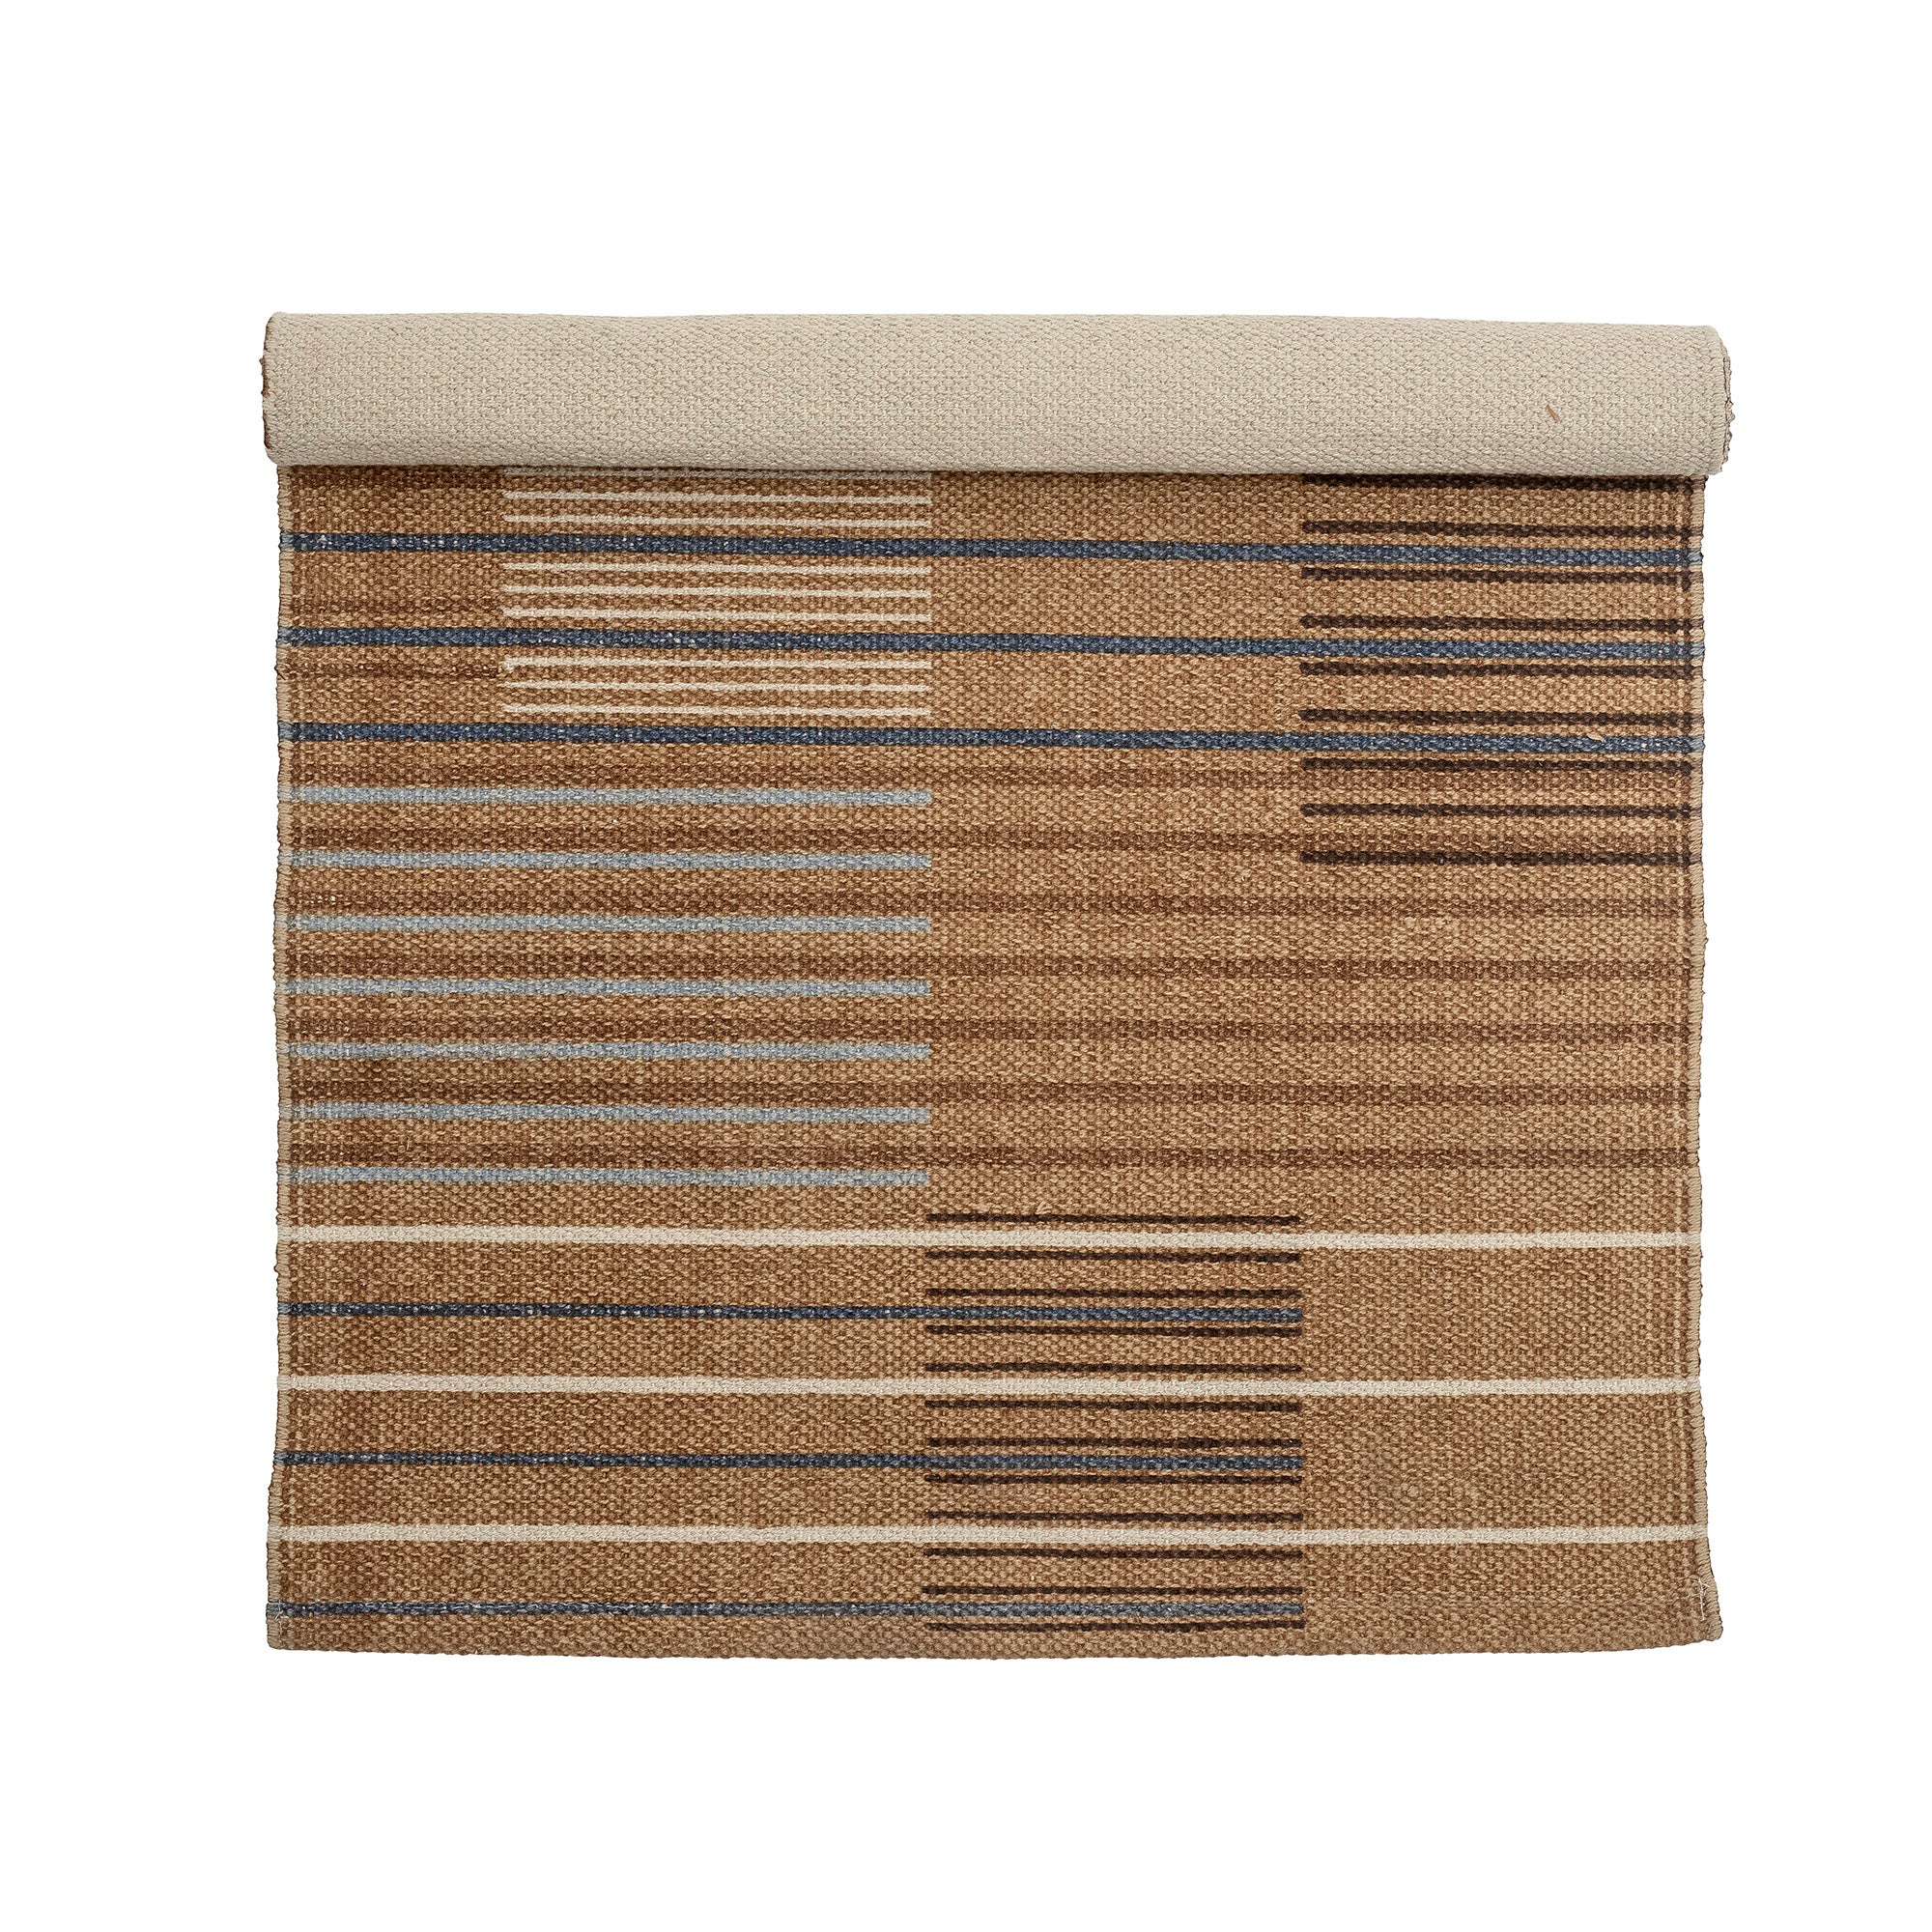 Boon Teppich, Braun, Baumwolle in Brown präsentiert im Onlineshop von KAQTU Design AG. Teppich ist von Bloomingville